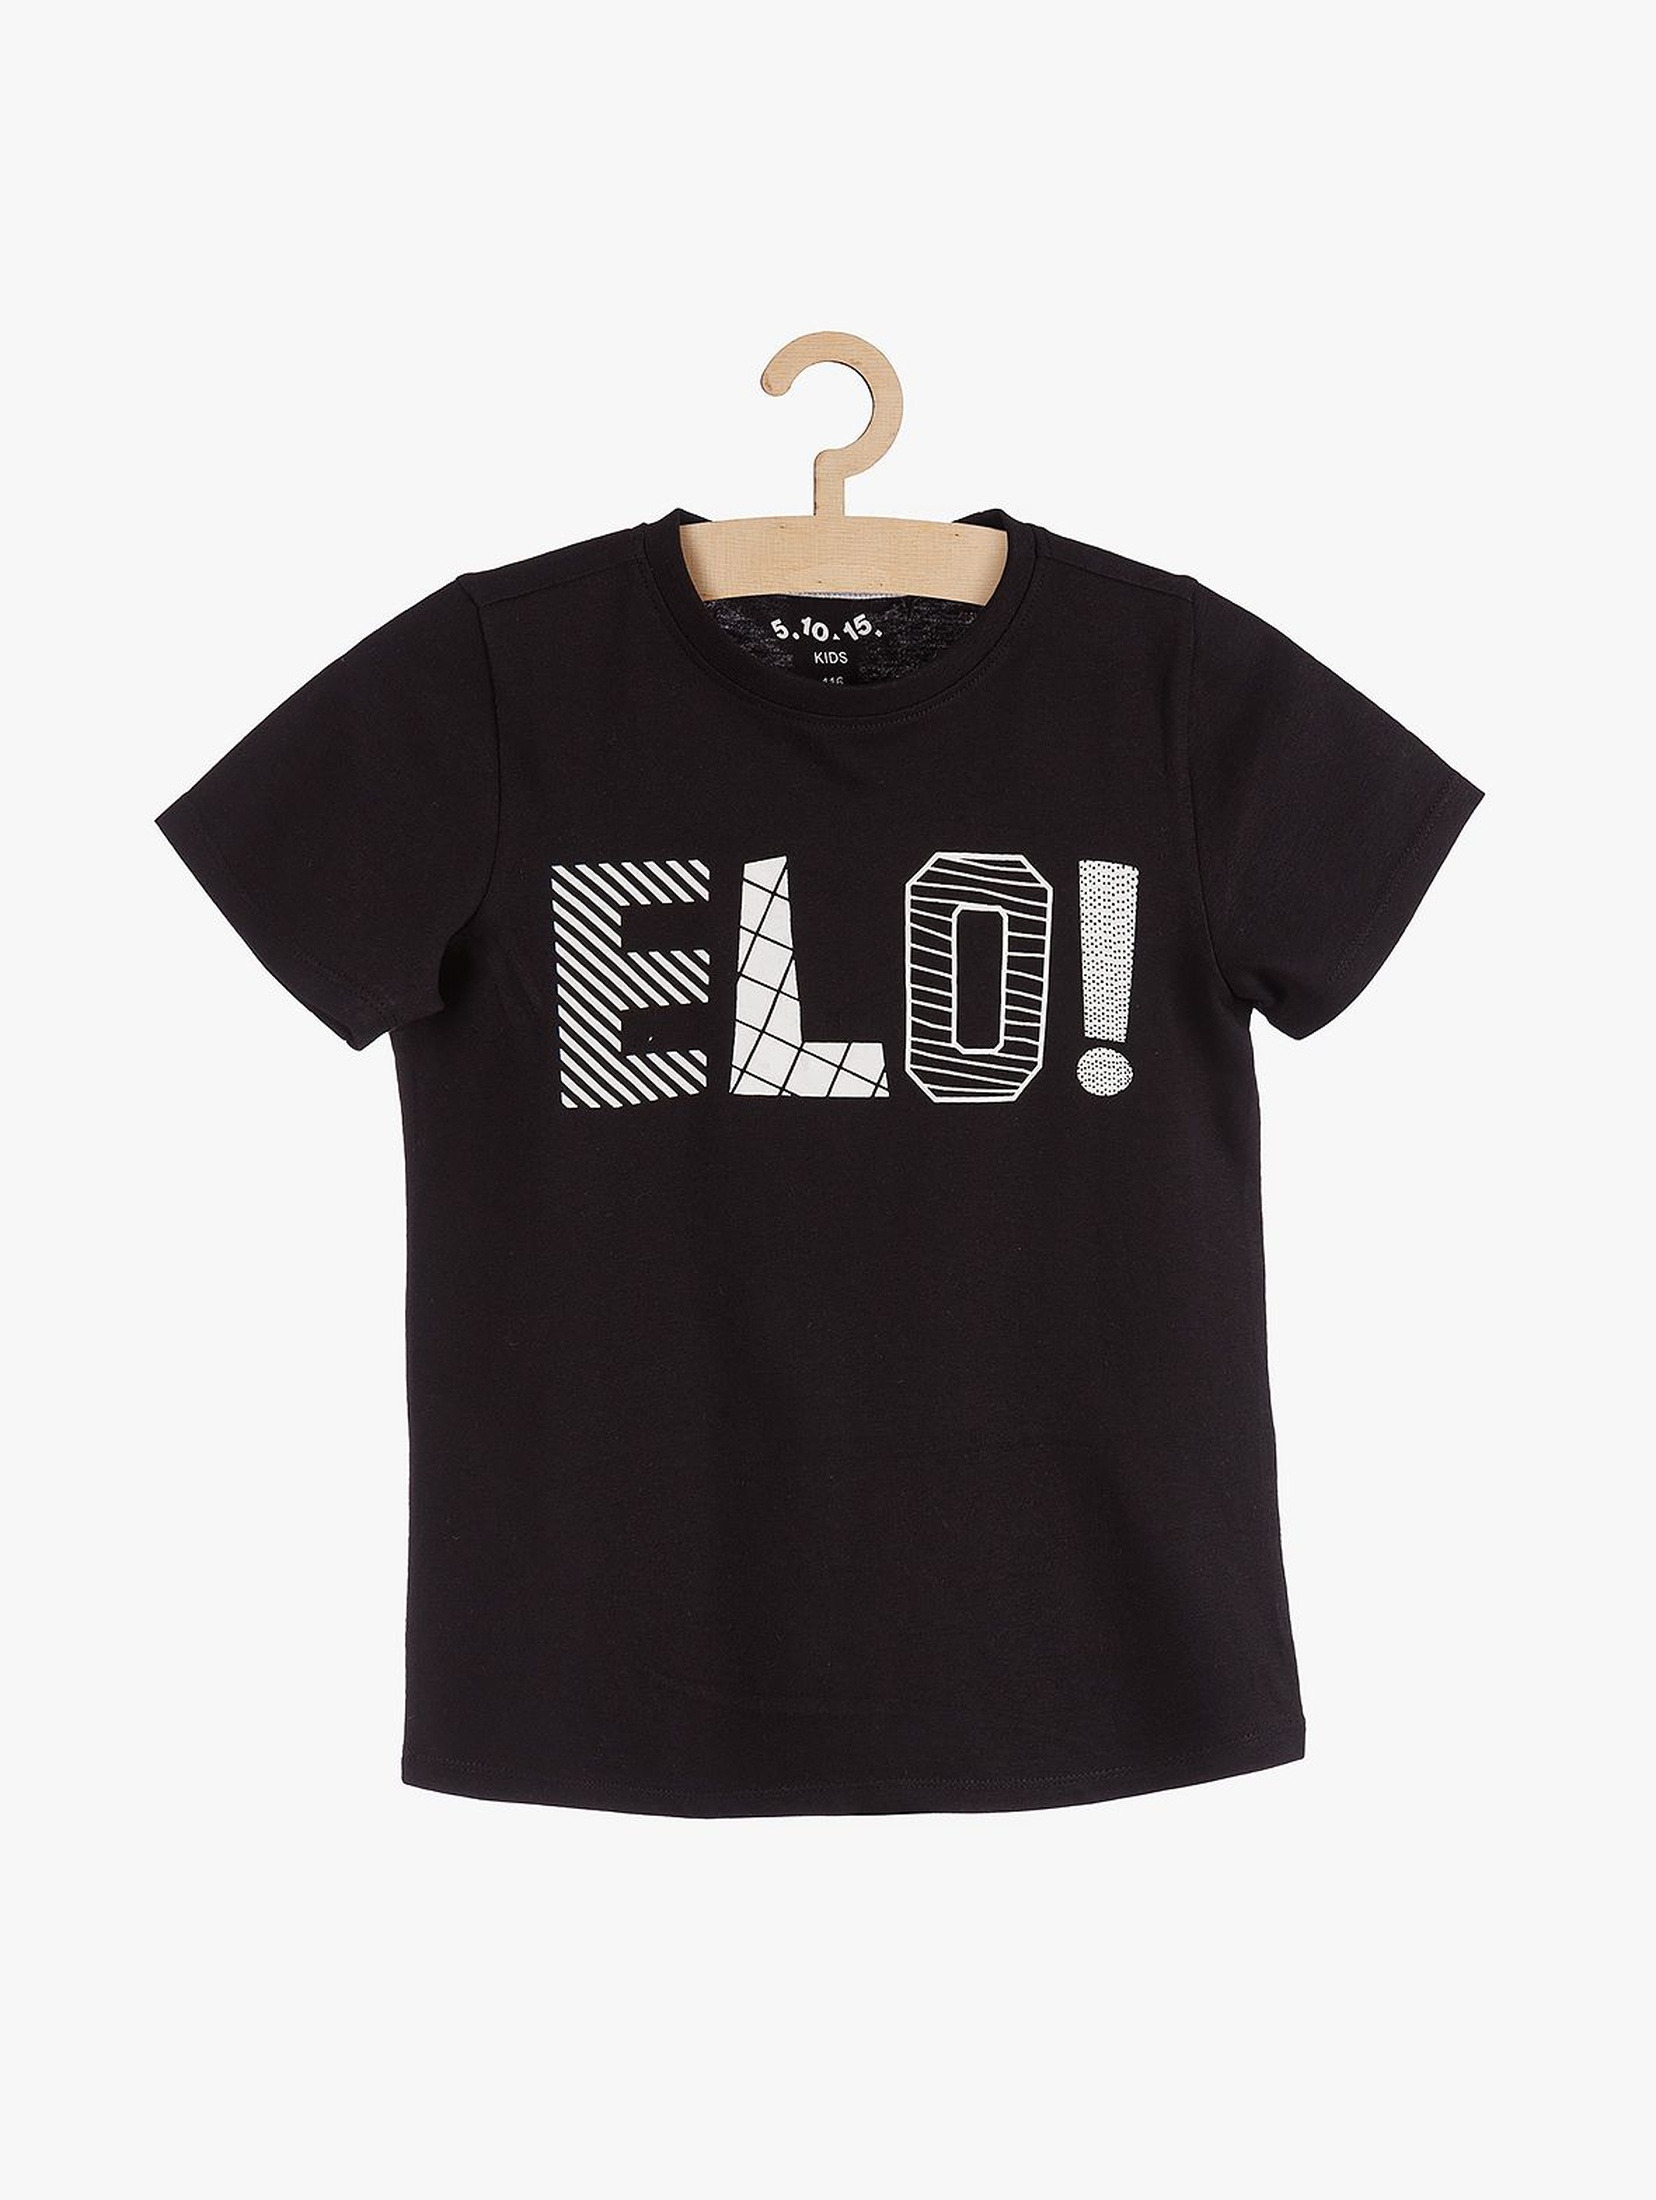 Czarny t-shirt dla chłopca z napisem- Elo